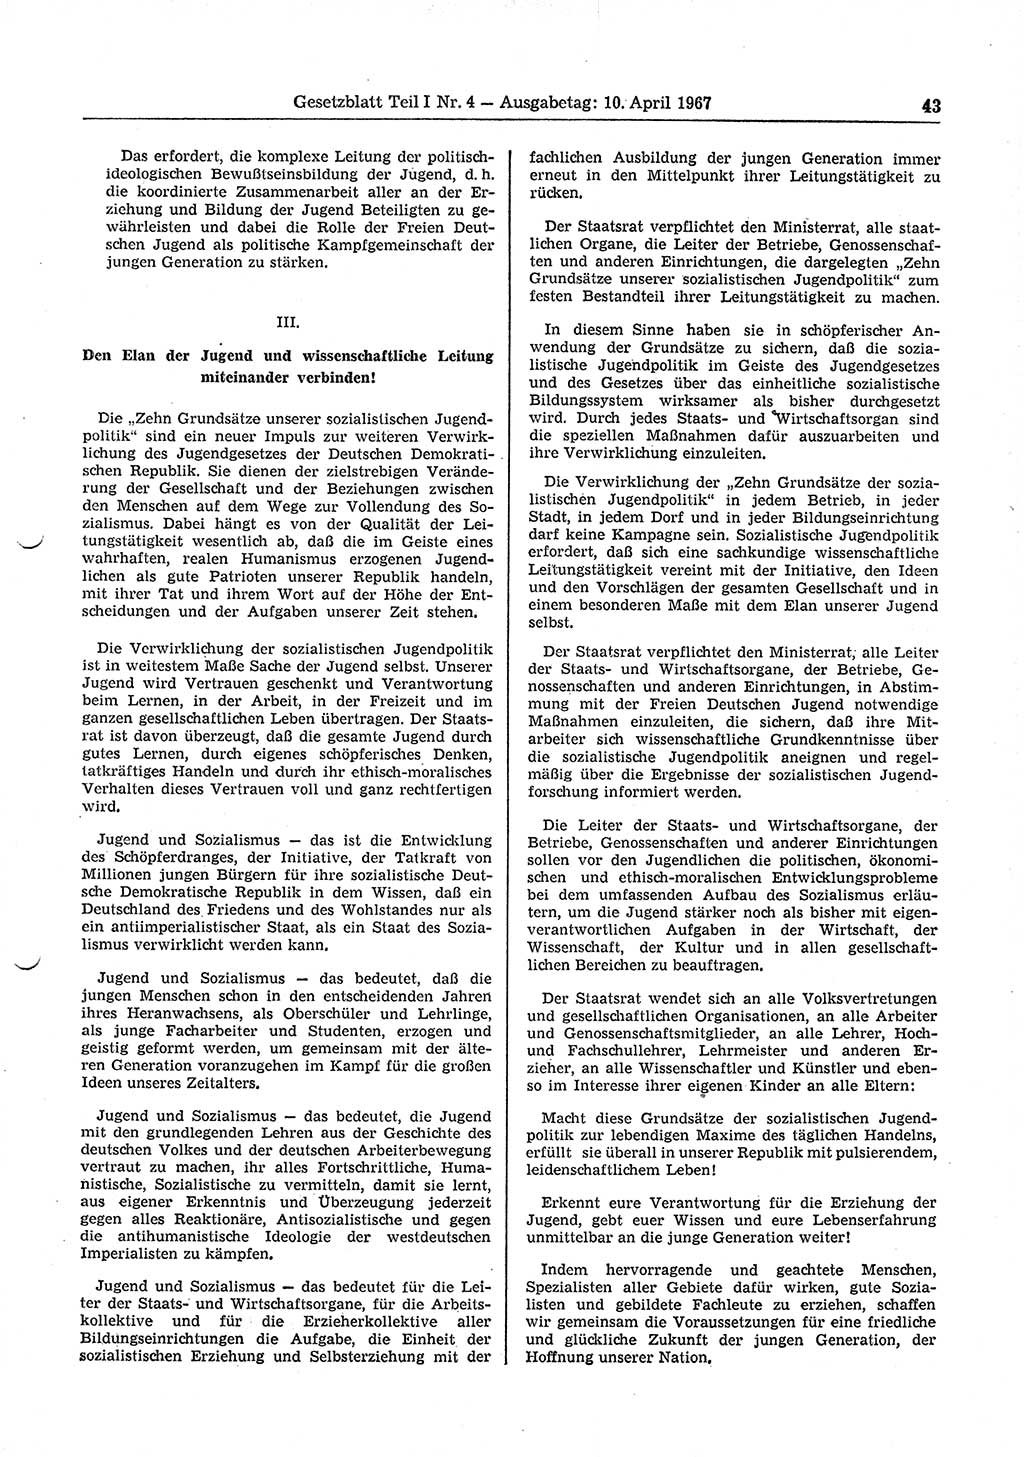 Gesetzblatt (GBl.) der Deutschen Demokratischen Republik (DDR) Teil Ⅰ 1967, Seite 43 (GBl. DDR Ⅰ 1967, S. 43)